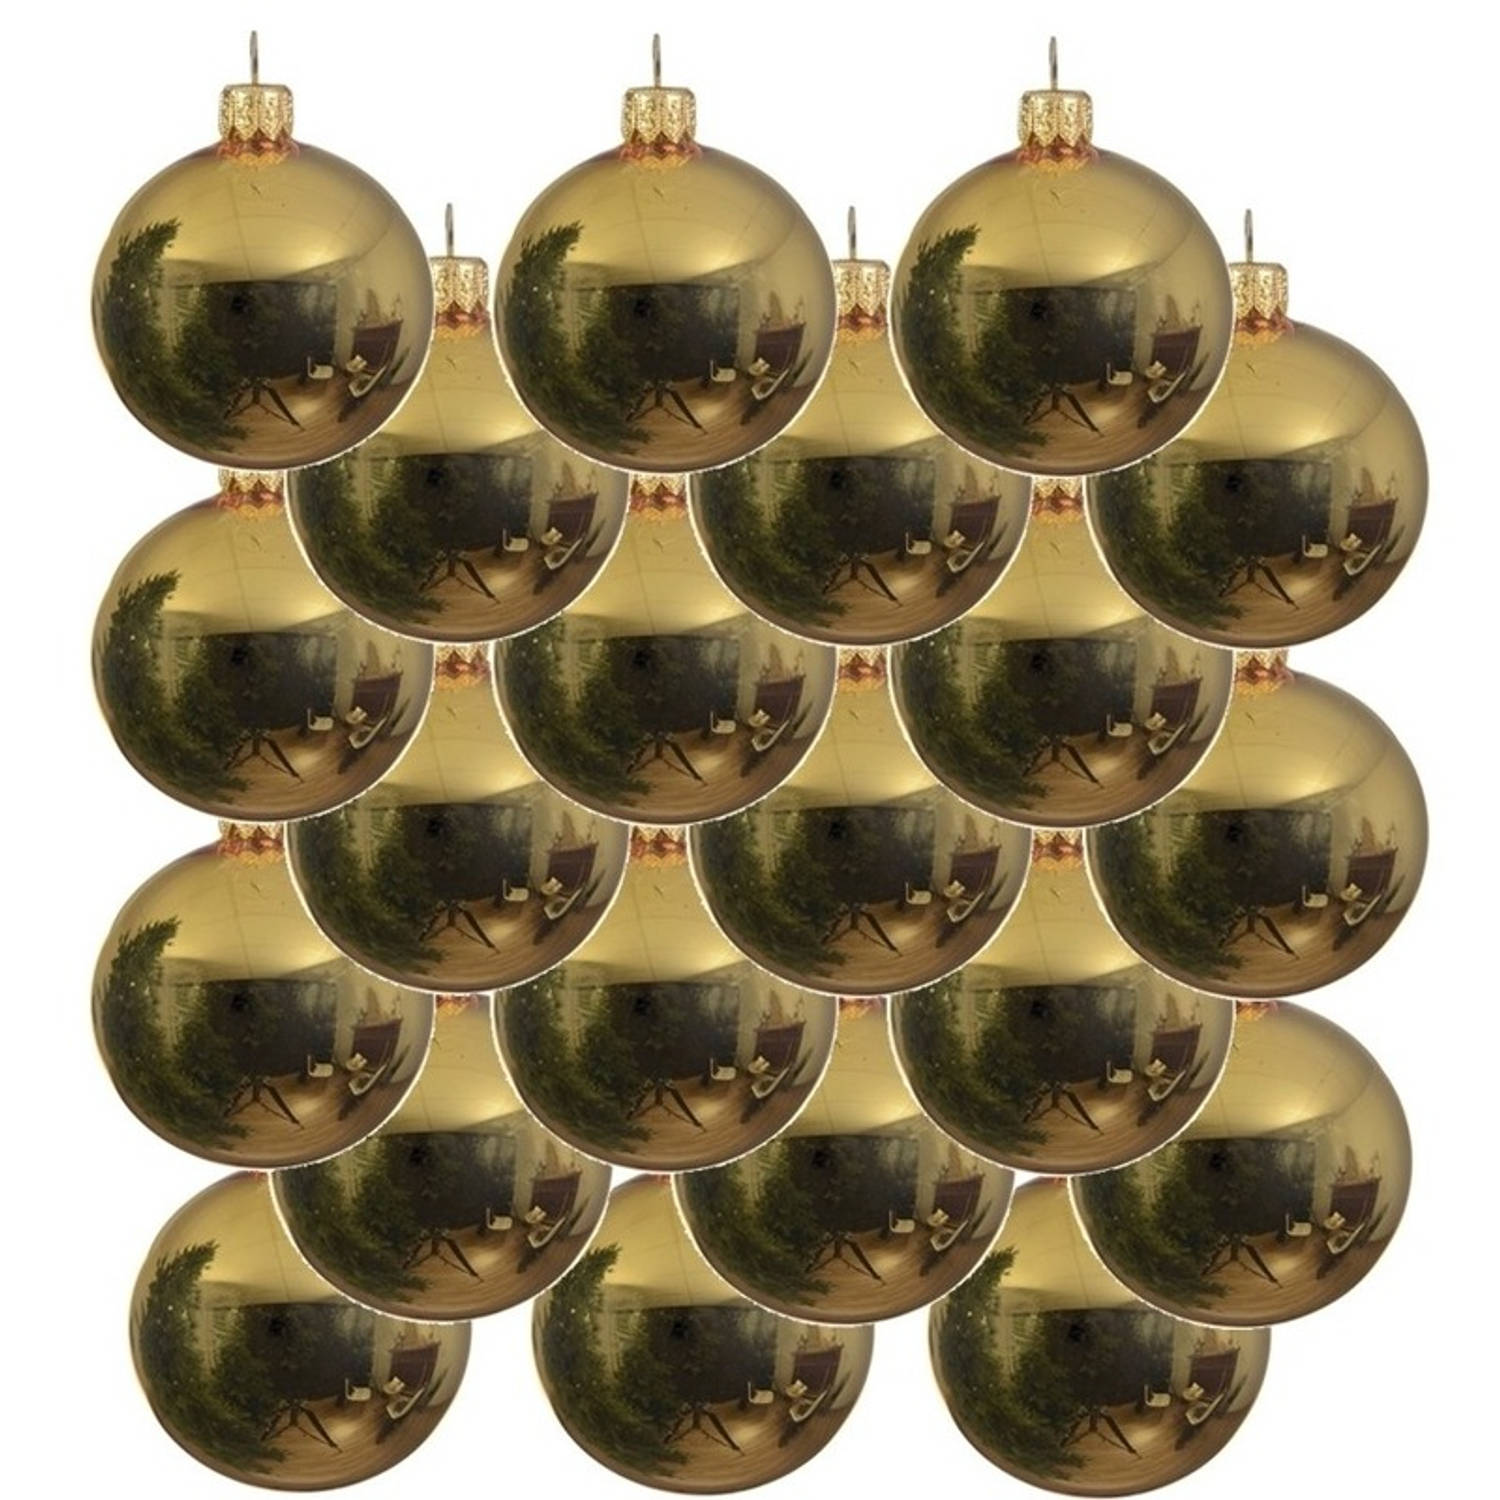 18x Gouden glazen kerstballen 8 cm Glans-glanzende Kerstboomversiering goud